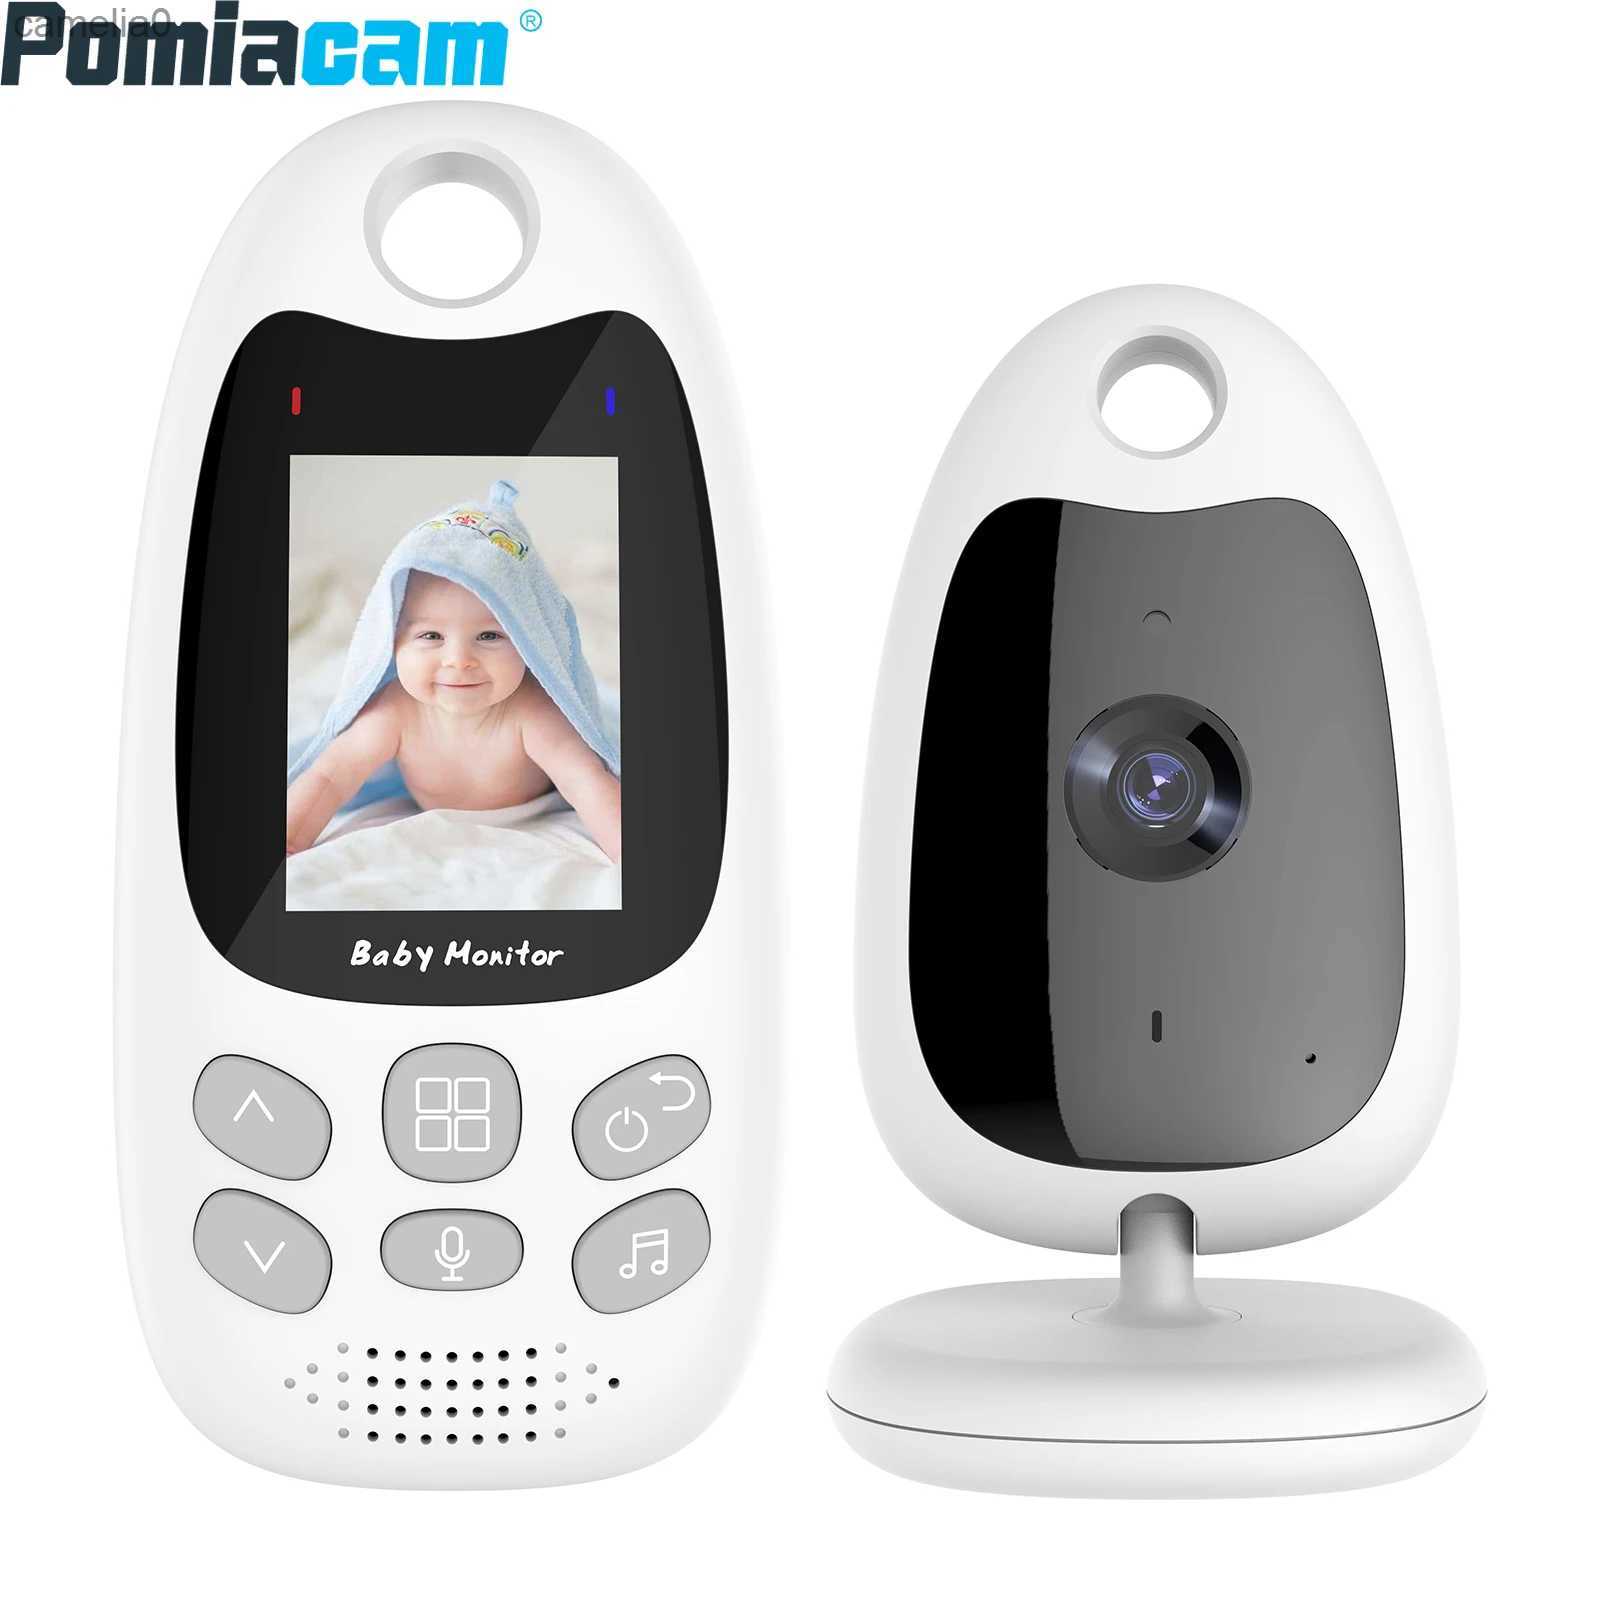 Monitores de bebés mini video monitor de bebé con visión nocturna automática audio llamado a la alarma de cuna de cuna de la sala de bebés que ahorra energía VB610C240412